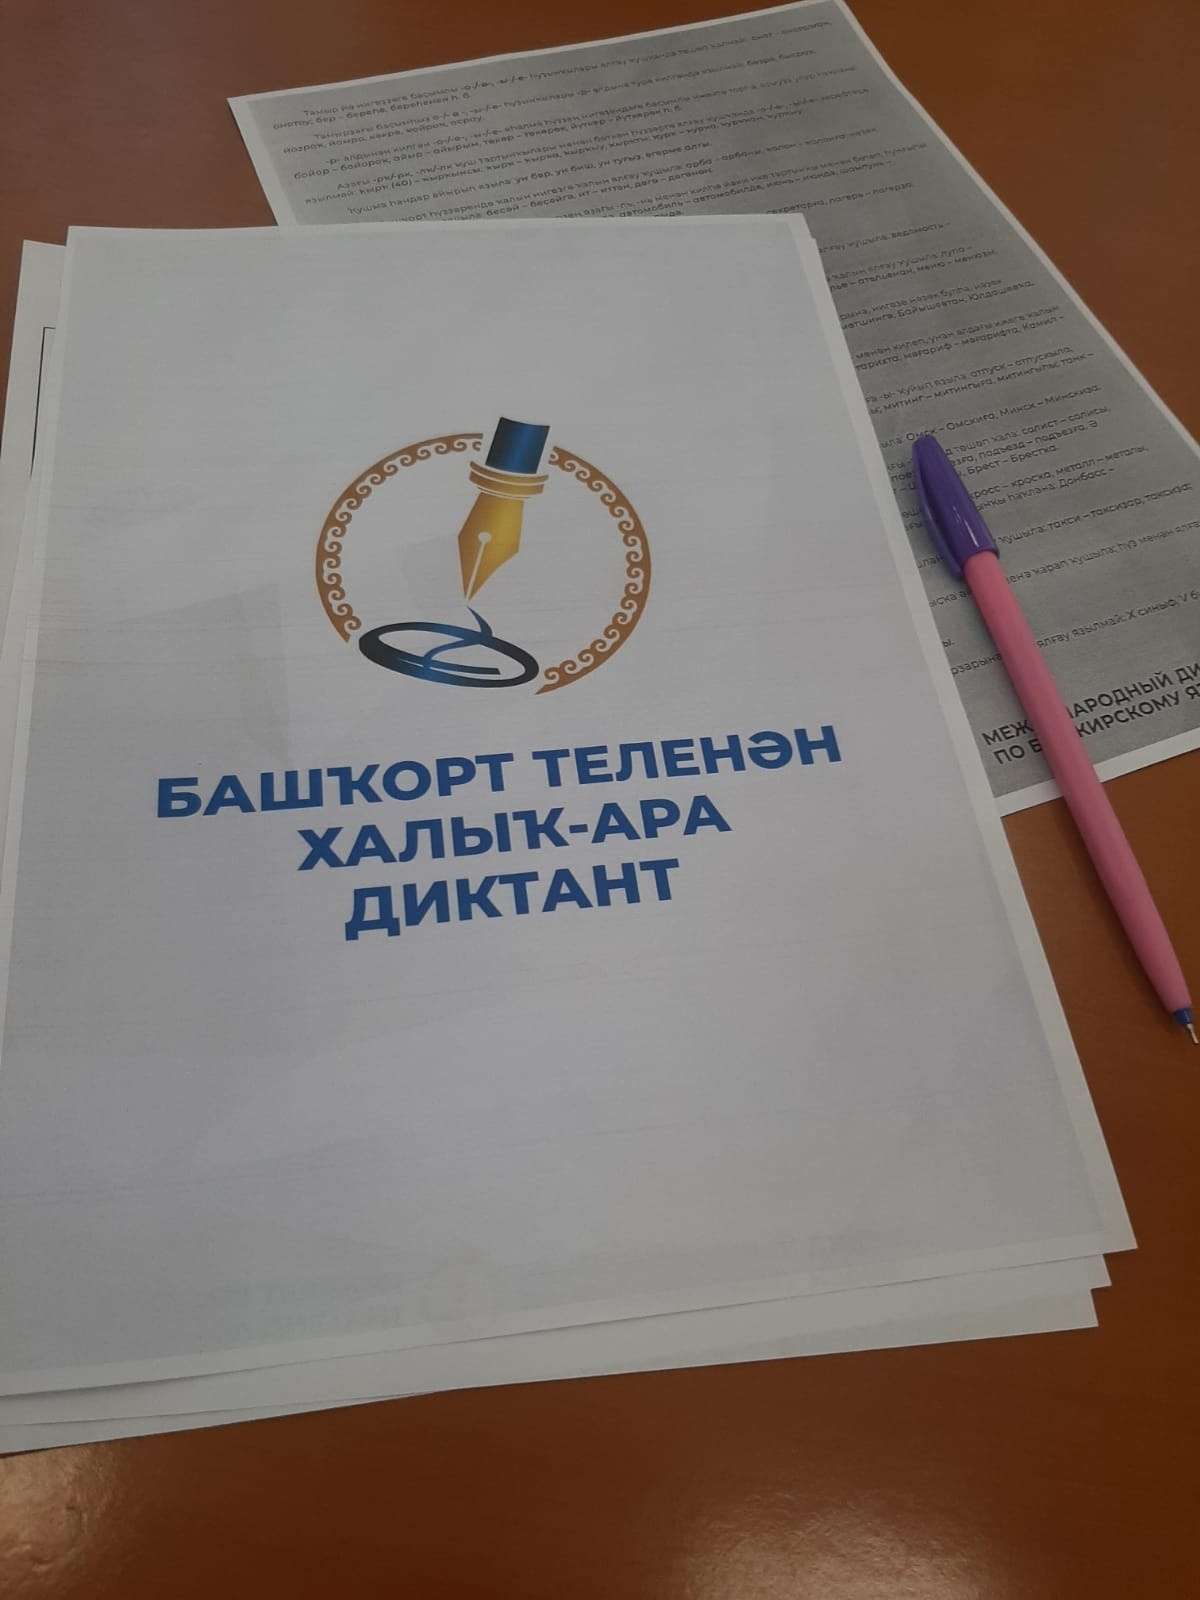 Сегодня по всему миру проходит Международная образовательная акция "Международный диктант по башкирскому языку" 2023